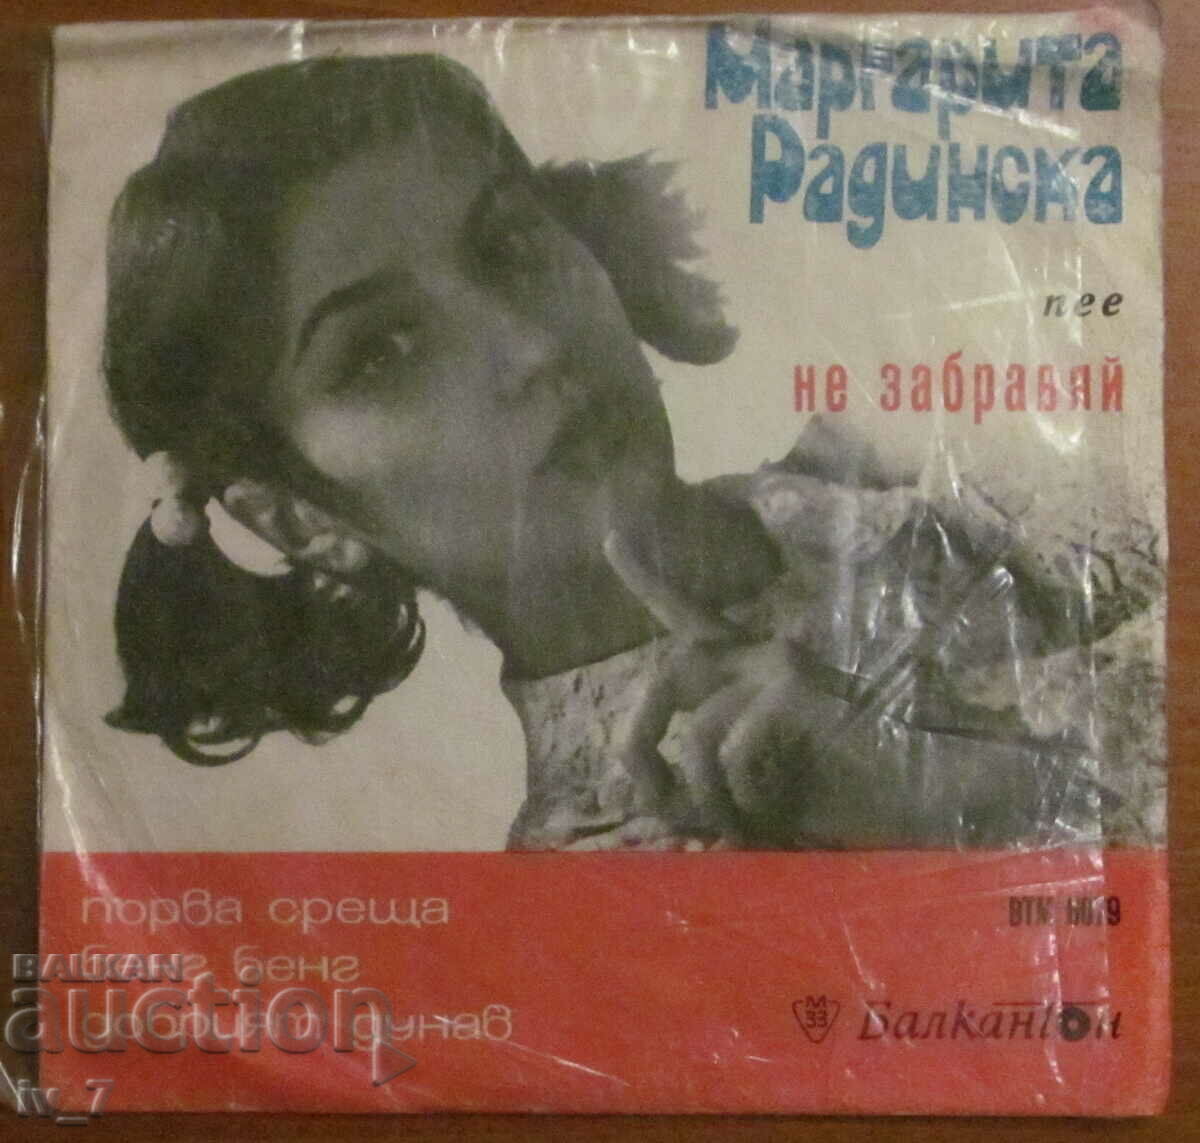 RECORD - MARGARITA RADINSKA, small format